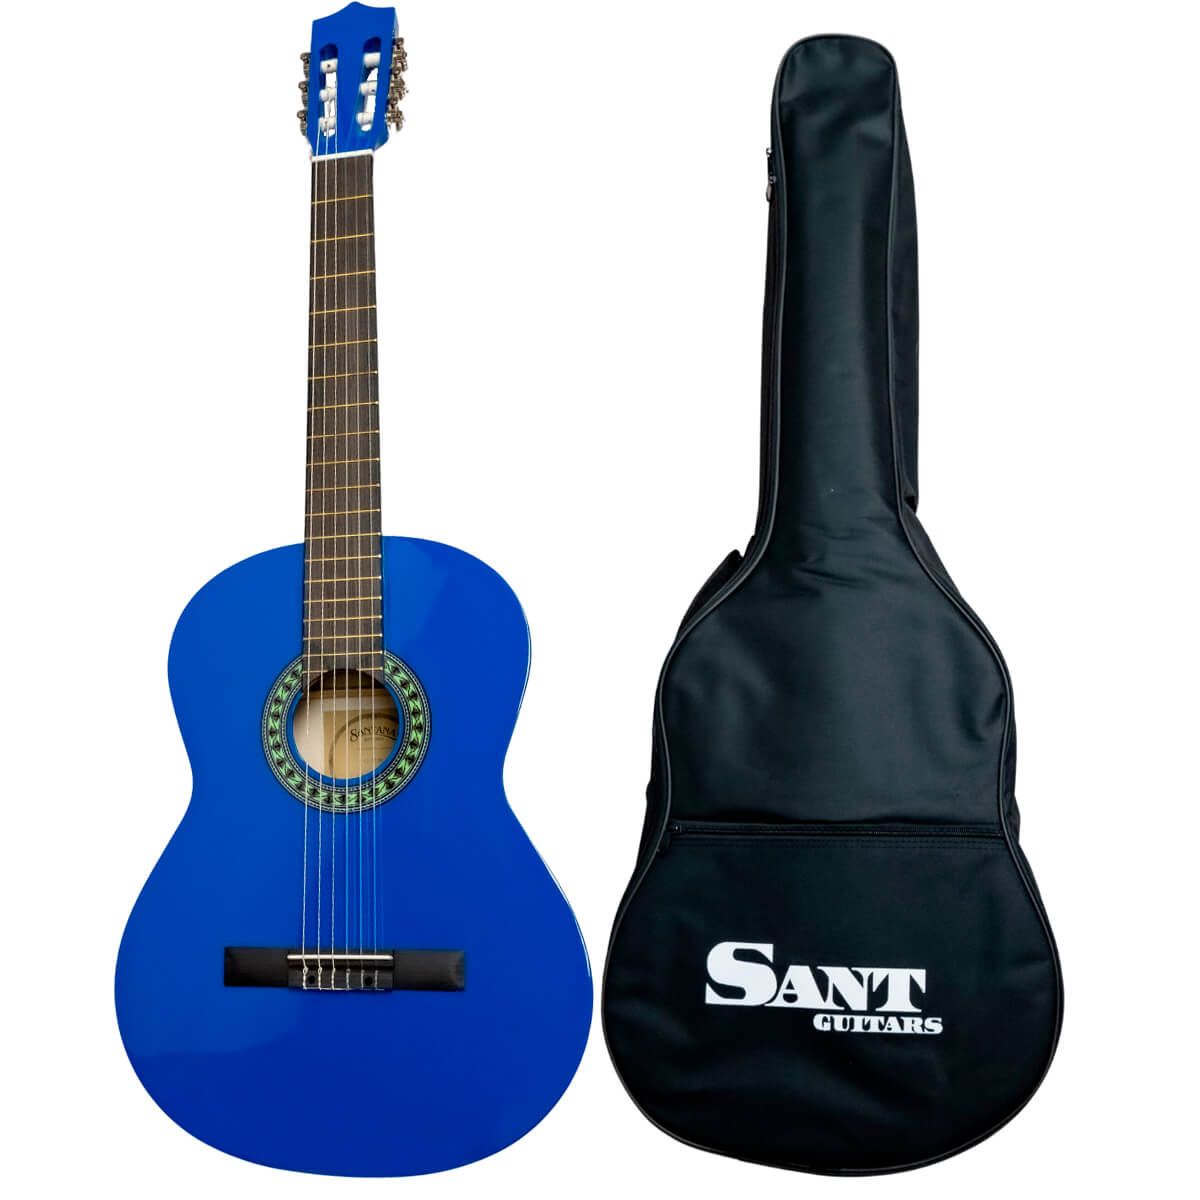 Køb Sant Guitars CL-50-BL - Spansk guitar - Blå - Pris 895.00 kr.